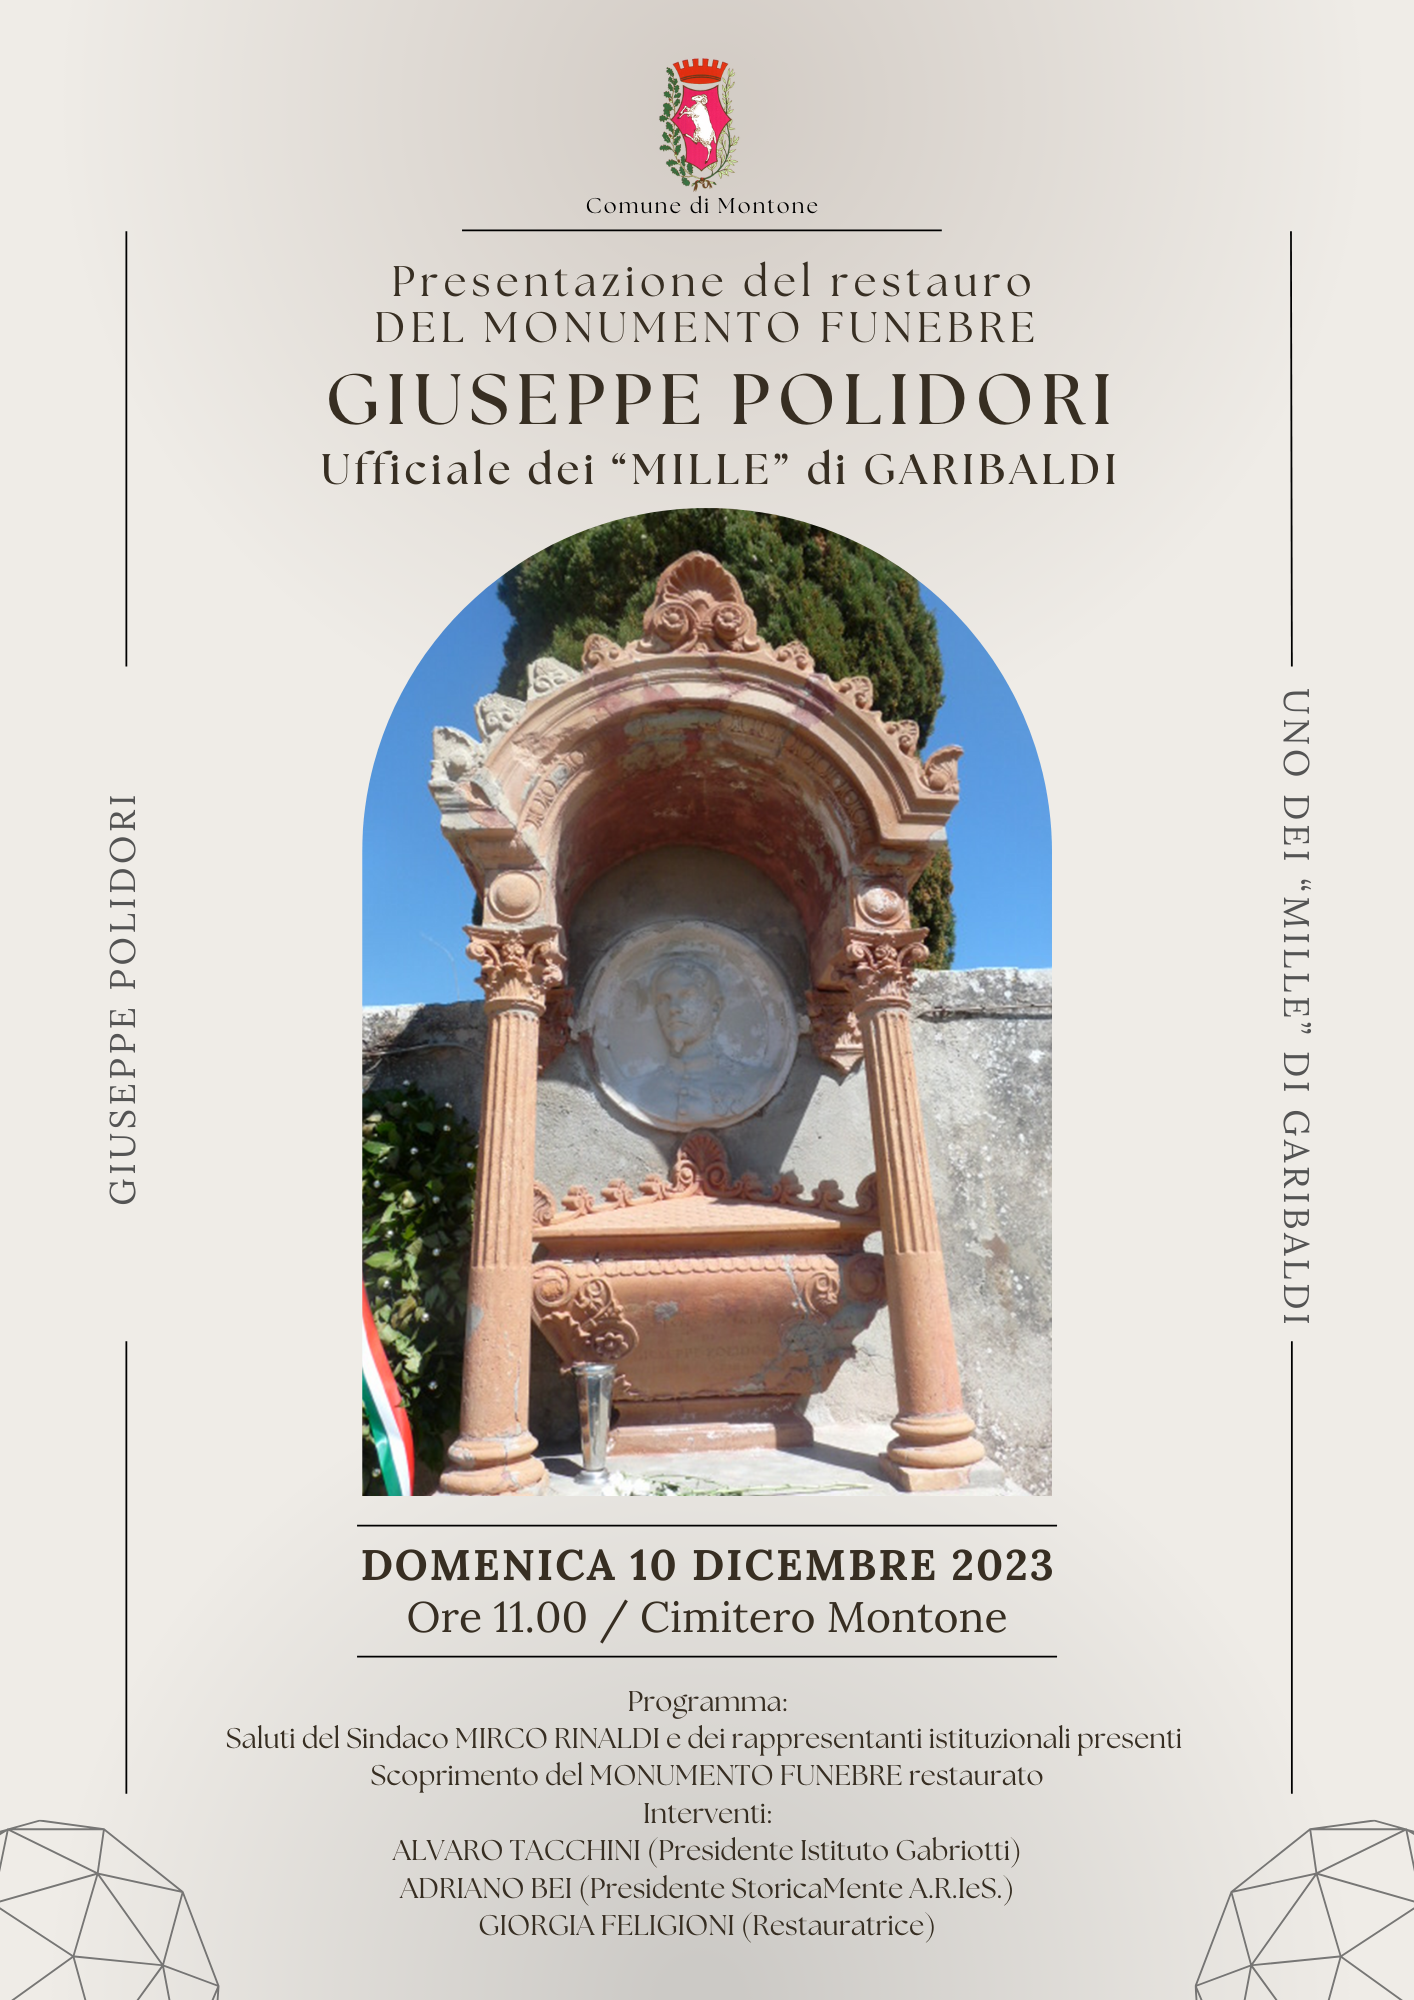 Montone – Presentazione del restauro del monumento funebre Giuseppe Polidori